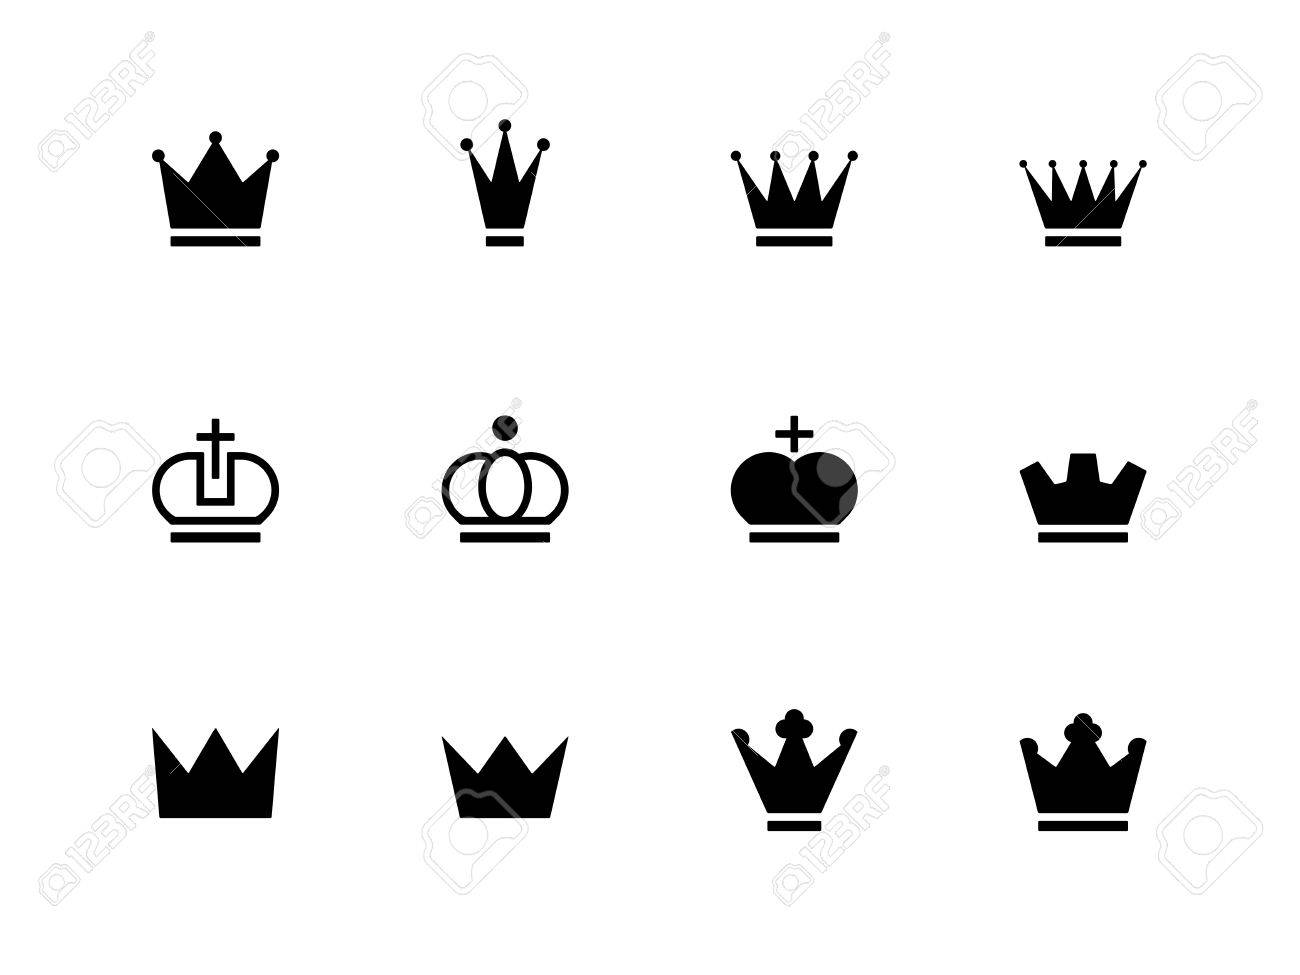 Freebie: Flat Vector Crown Icons - Dreamstale